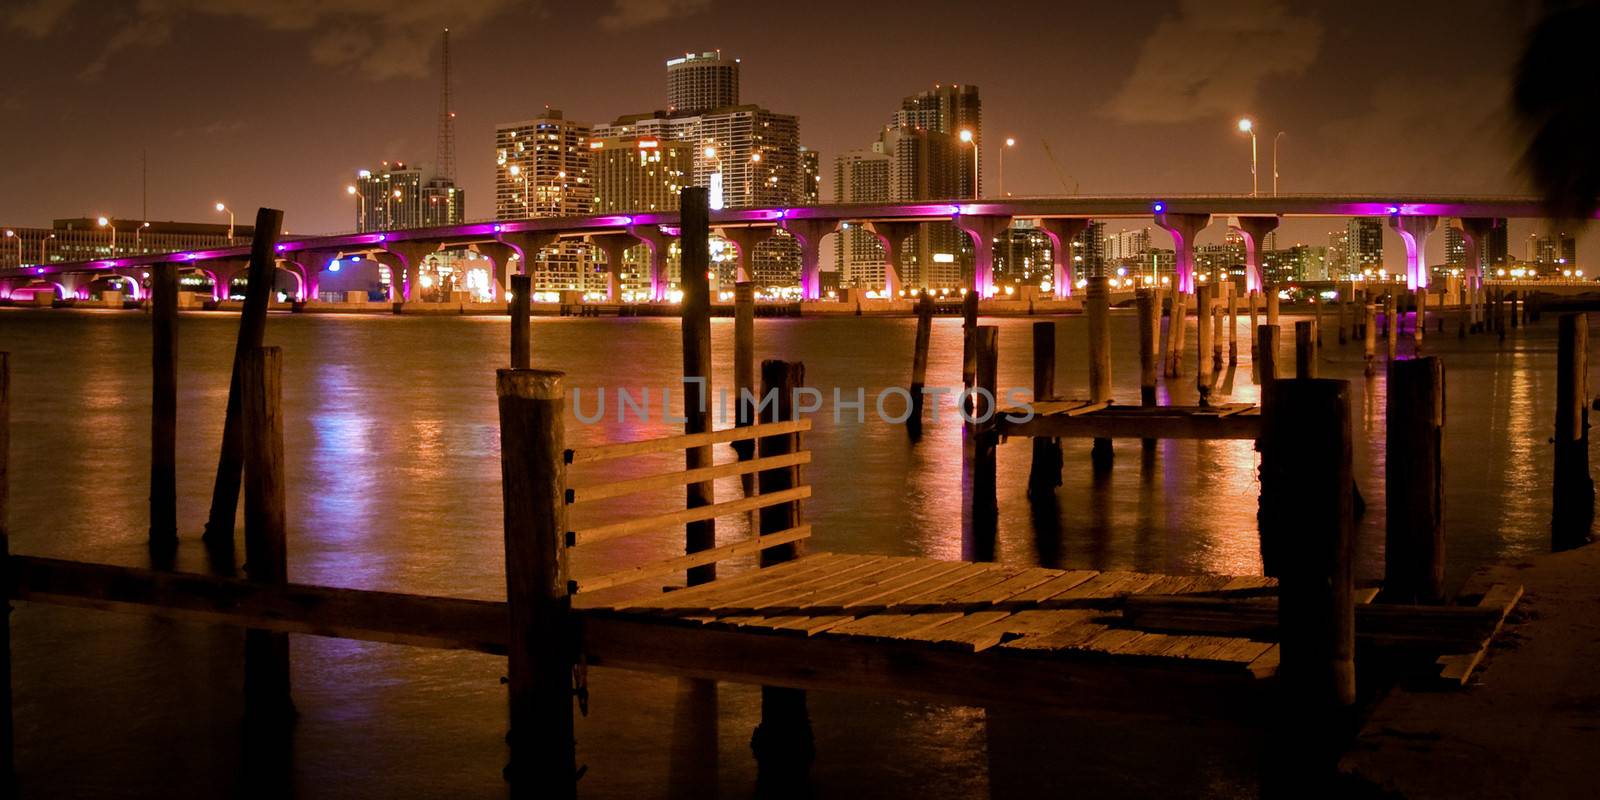 Pier over the Atlantic ocean at night, Miami, Miami-Dade County, Florida, USA